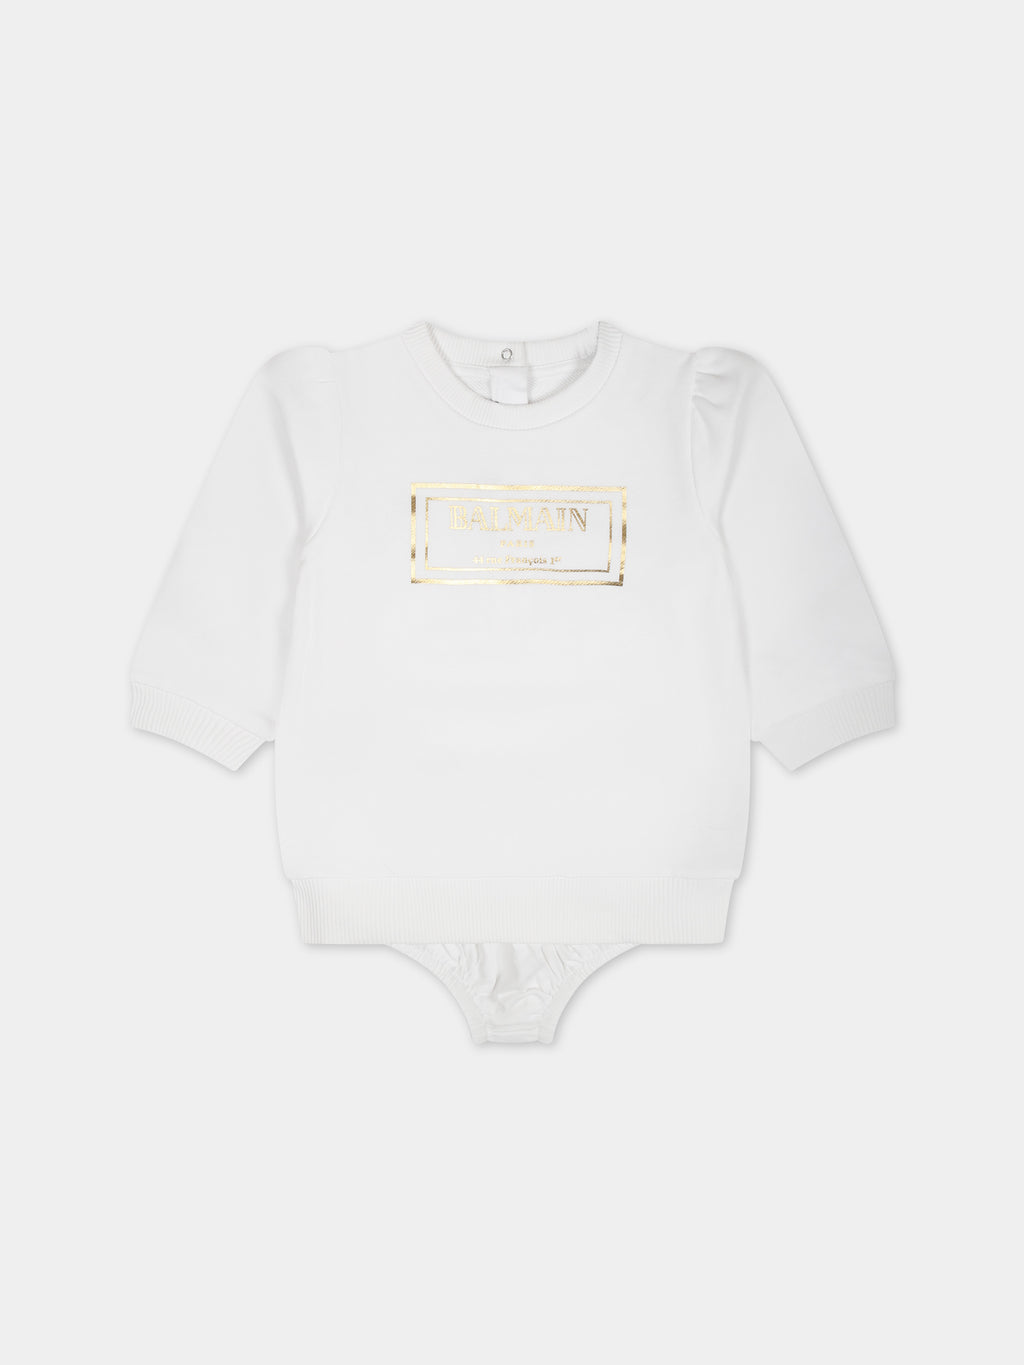 Vestito bianco per neonata con logo